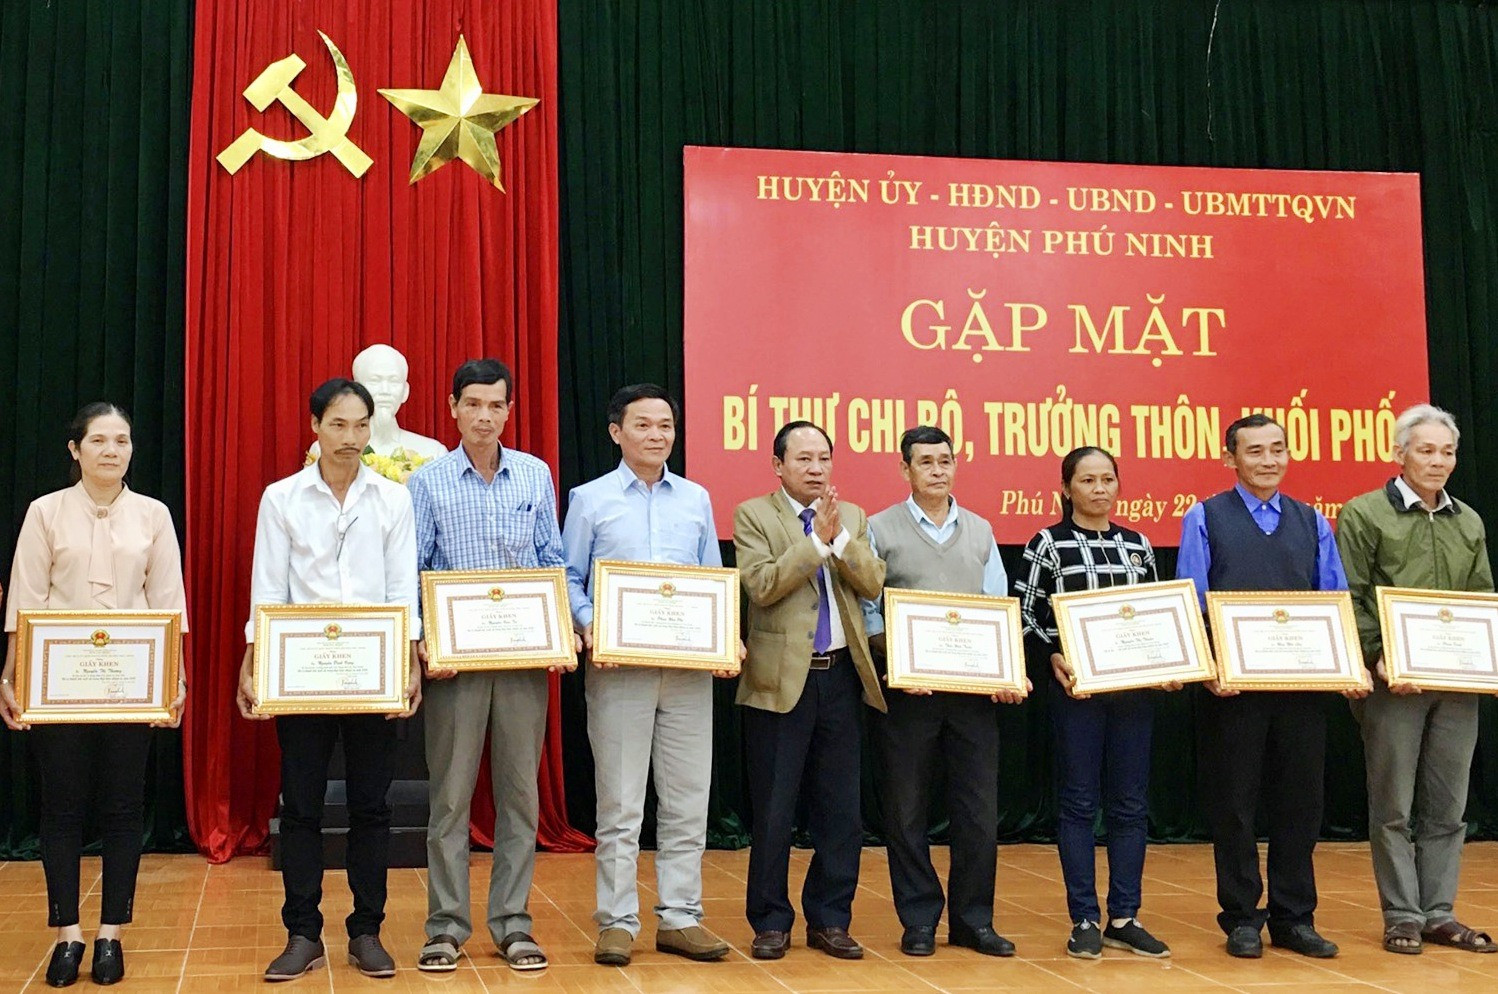 UBND huyện Phú Ninh khen thưởng cho 11 bí thư chi bộ, trưởng thôn khối phố thực hiện tốt nhiệm vụ. Ảnh: H.CHÂU